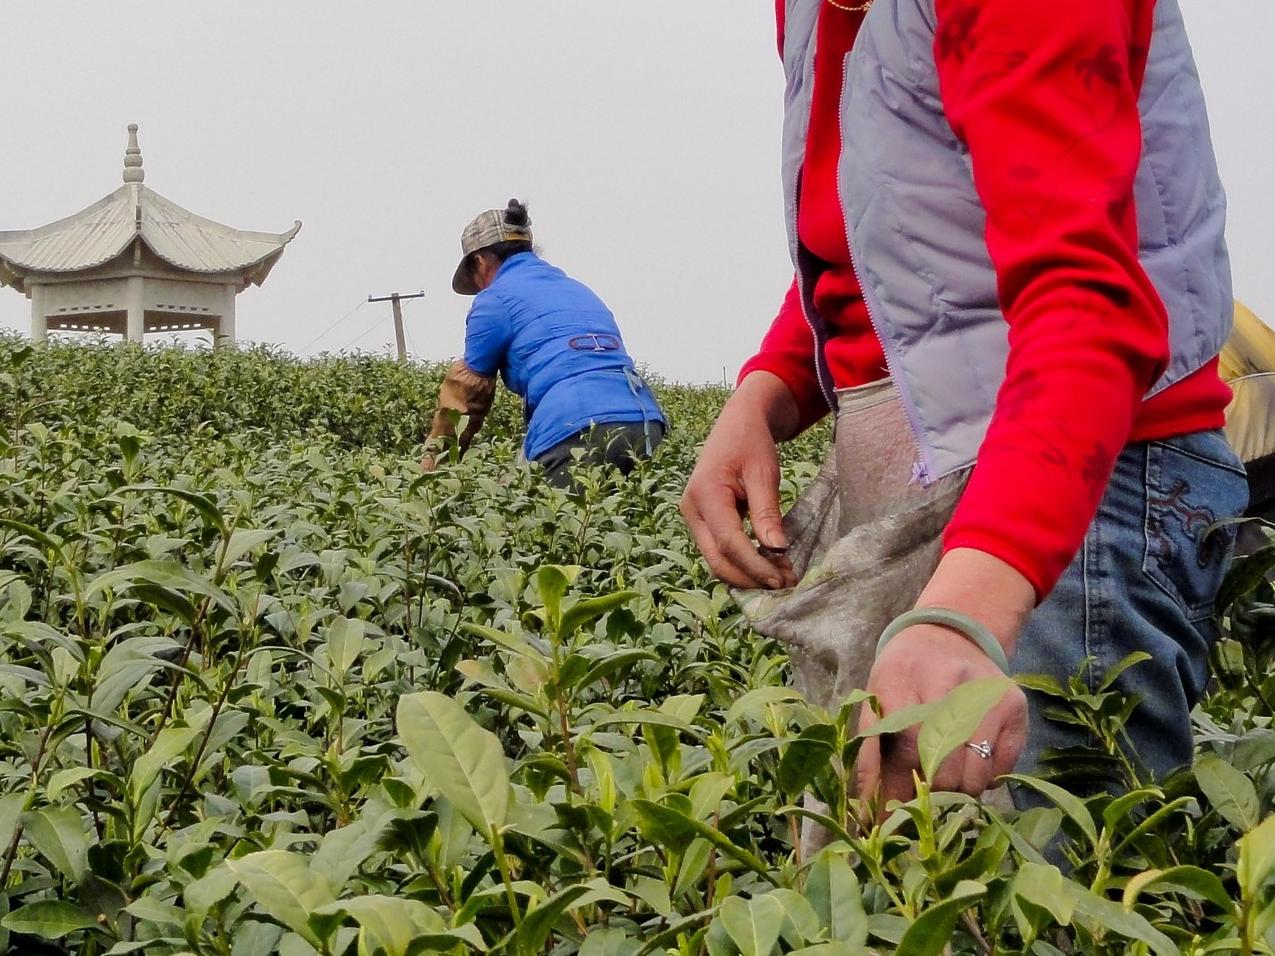 Tea harvesting in China © UTZ Certified